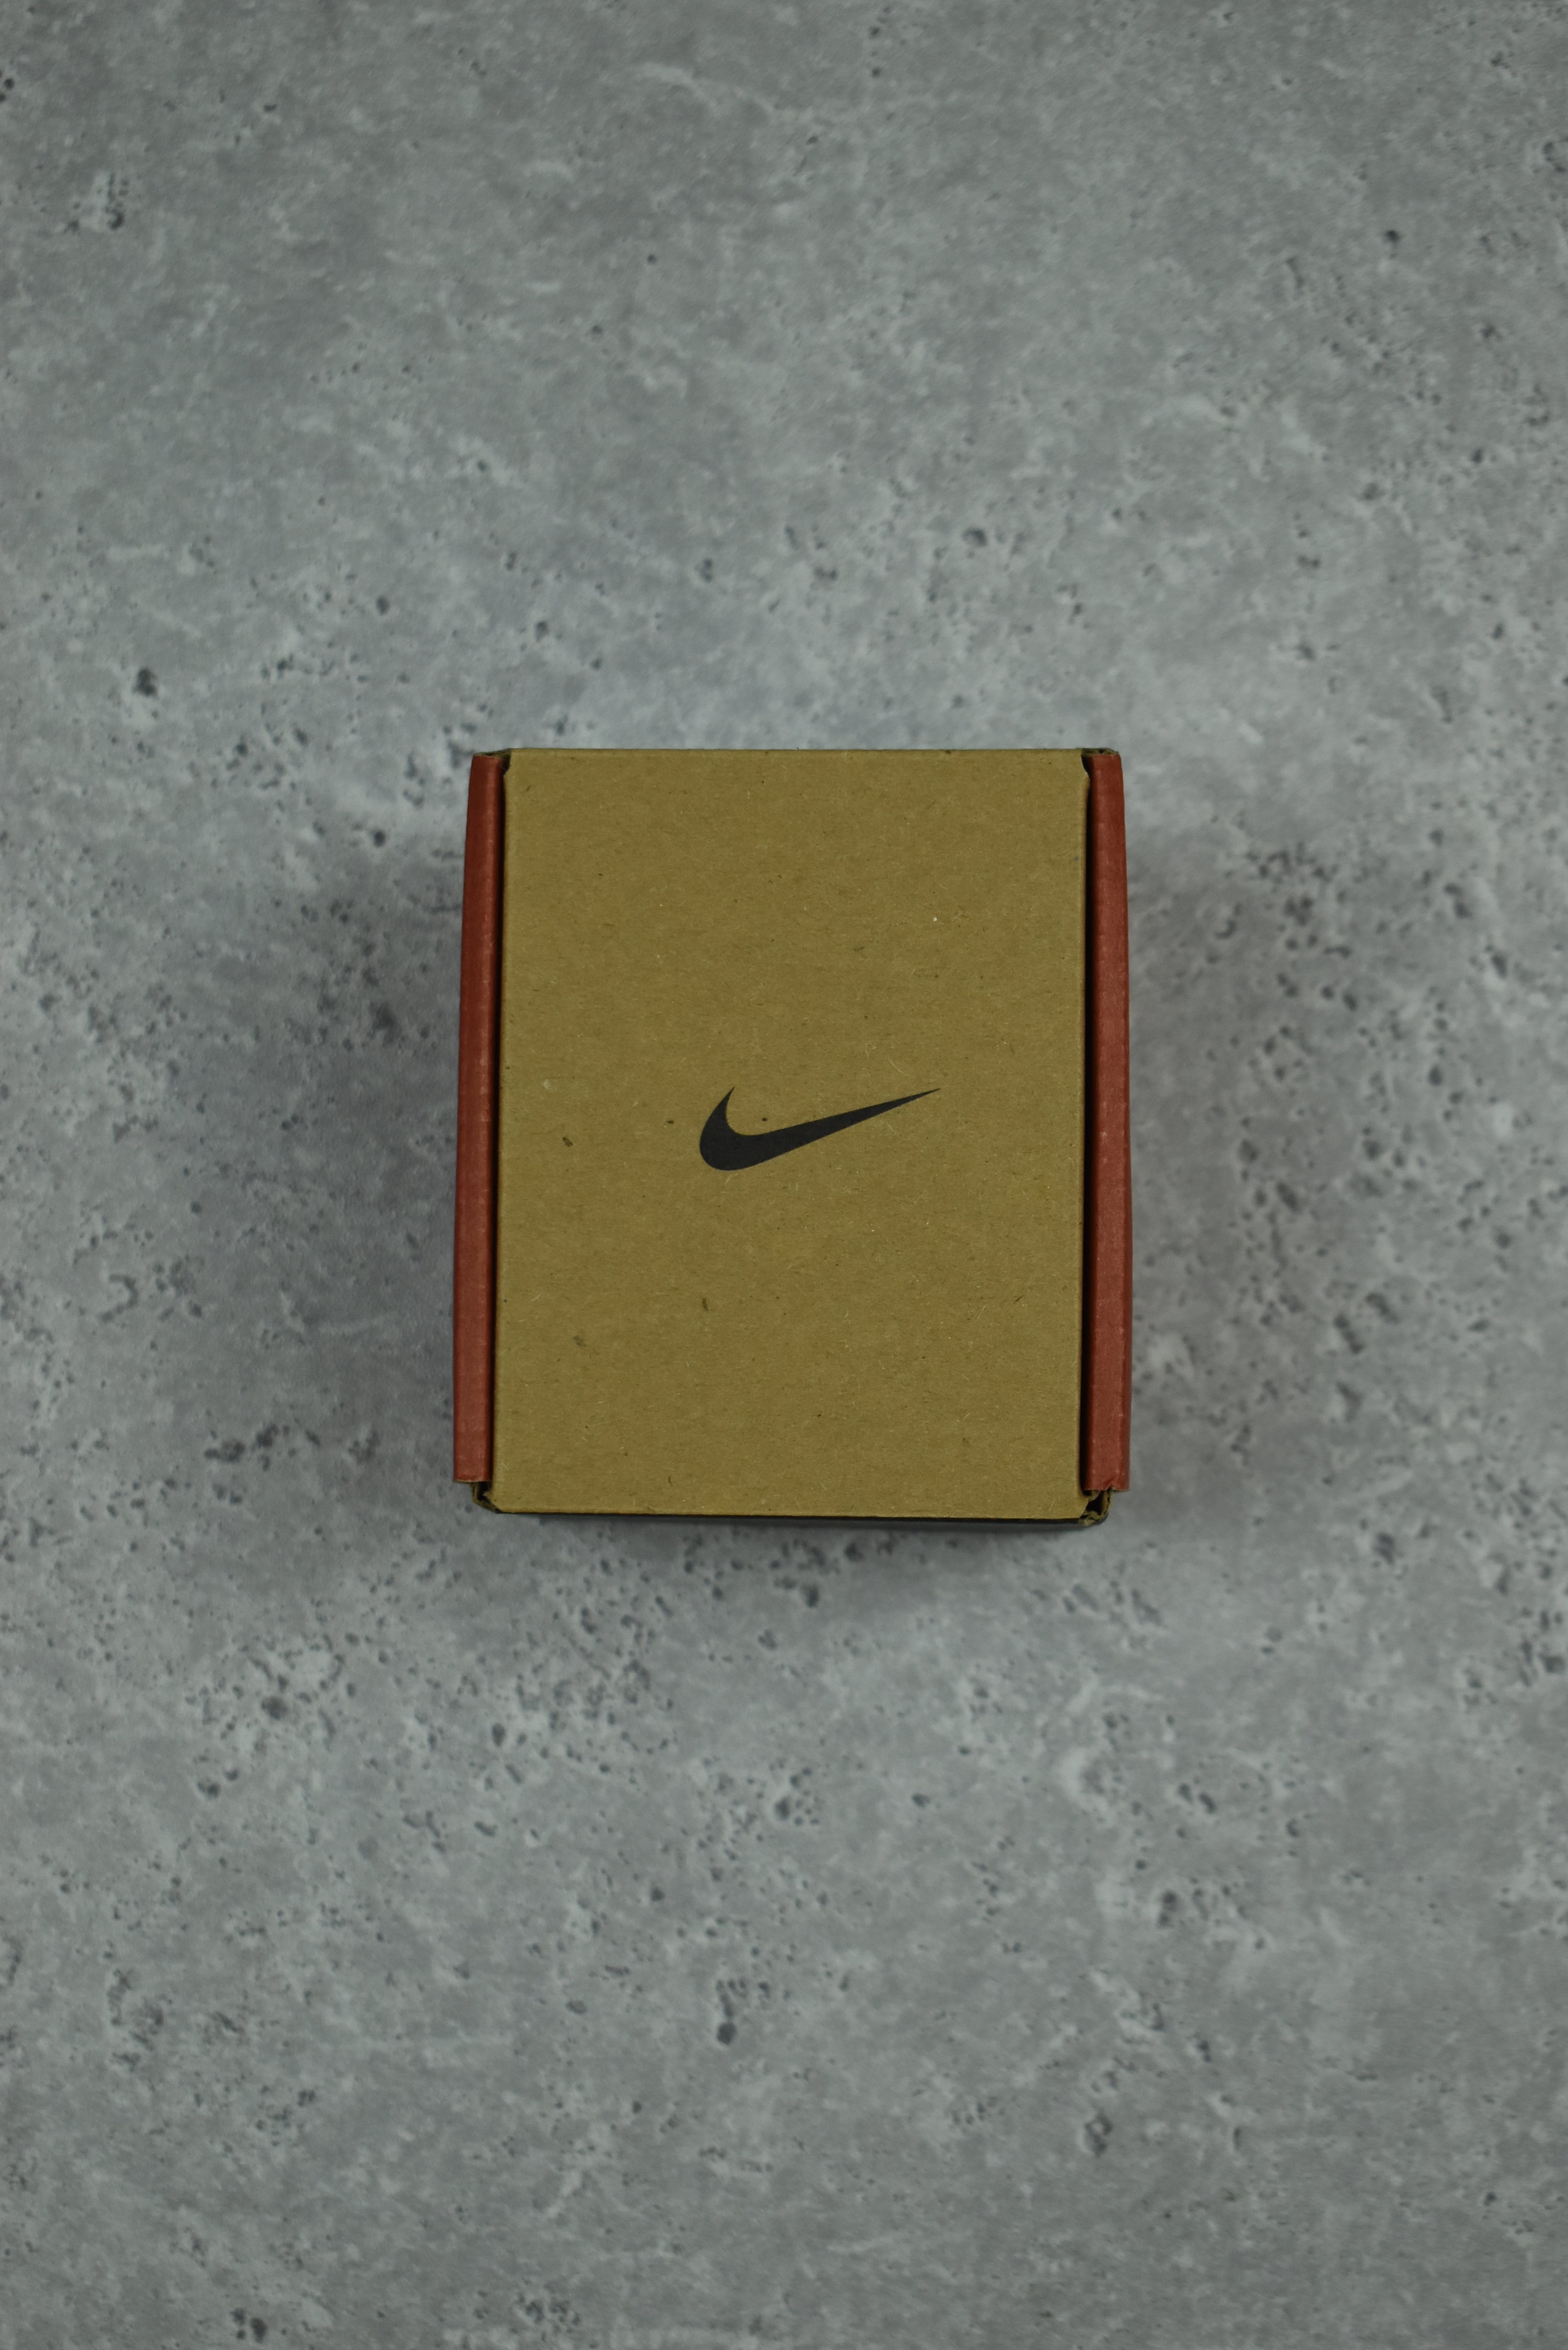 Vintage Nike Triax Watch Analog Black - Preorder Link